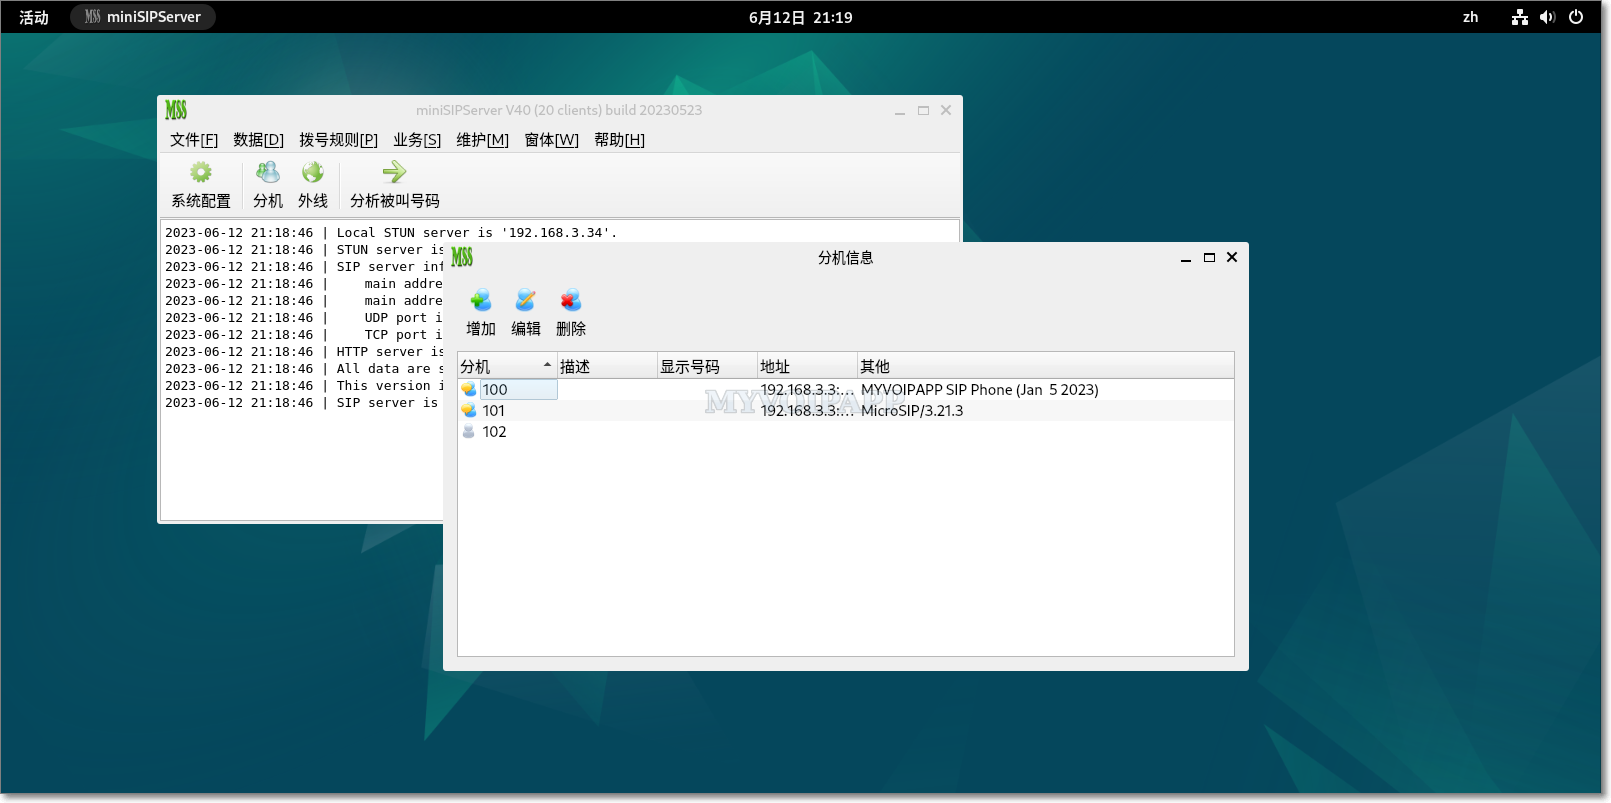 在 Debian 12 系统中运行的 miniSIPServer